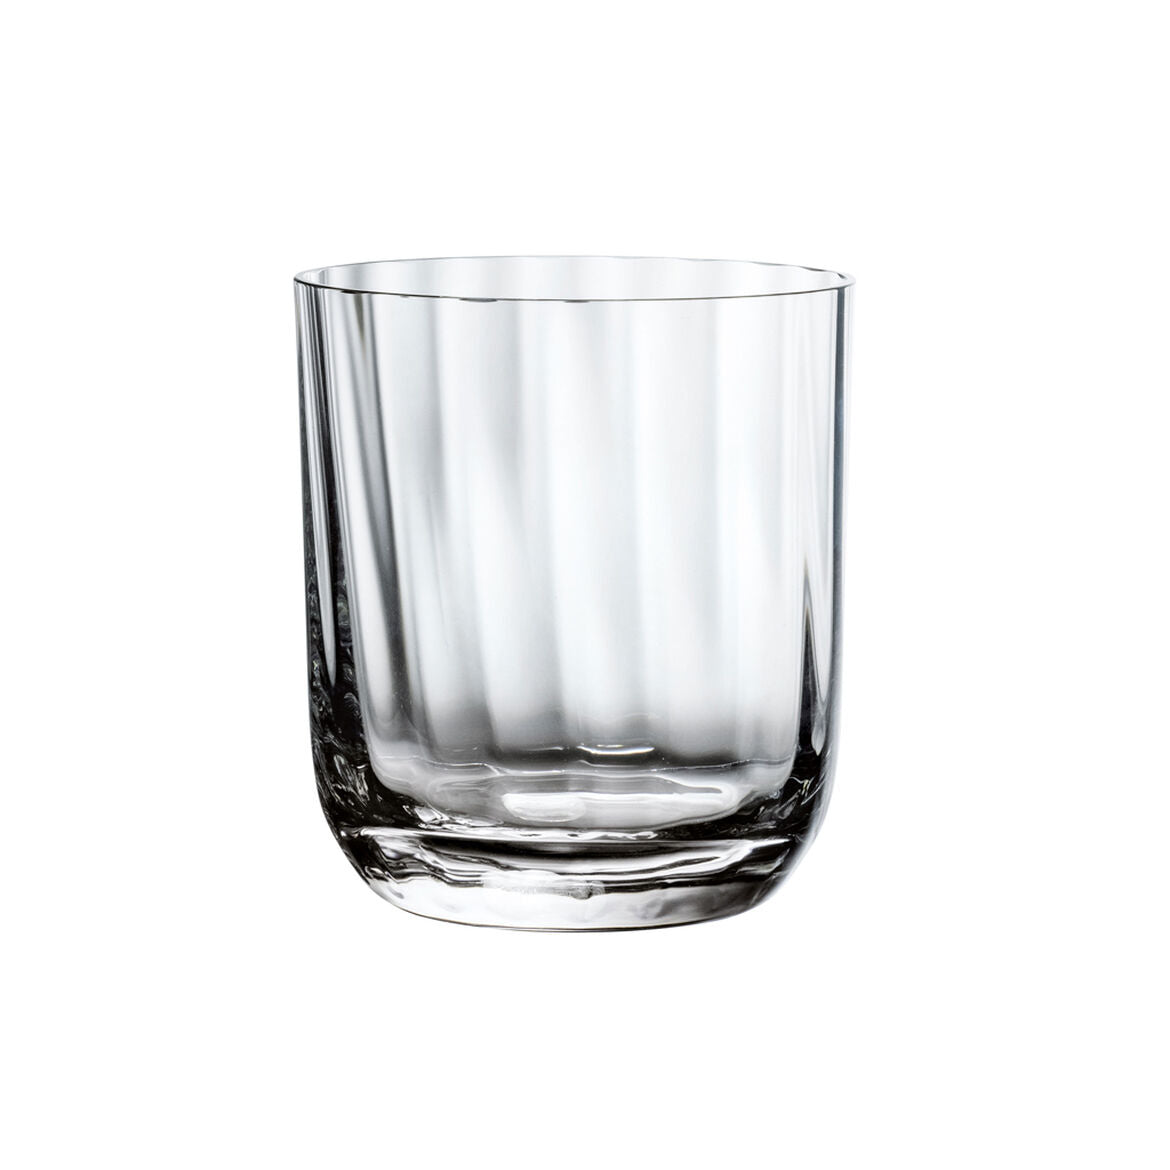 Villeroy & Boch, Rose Garden Water Glass, Dishwasher Safe, 6.75 oz,  Set of 4